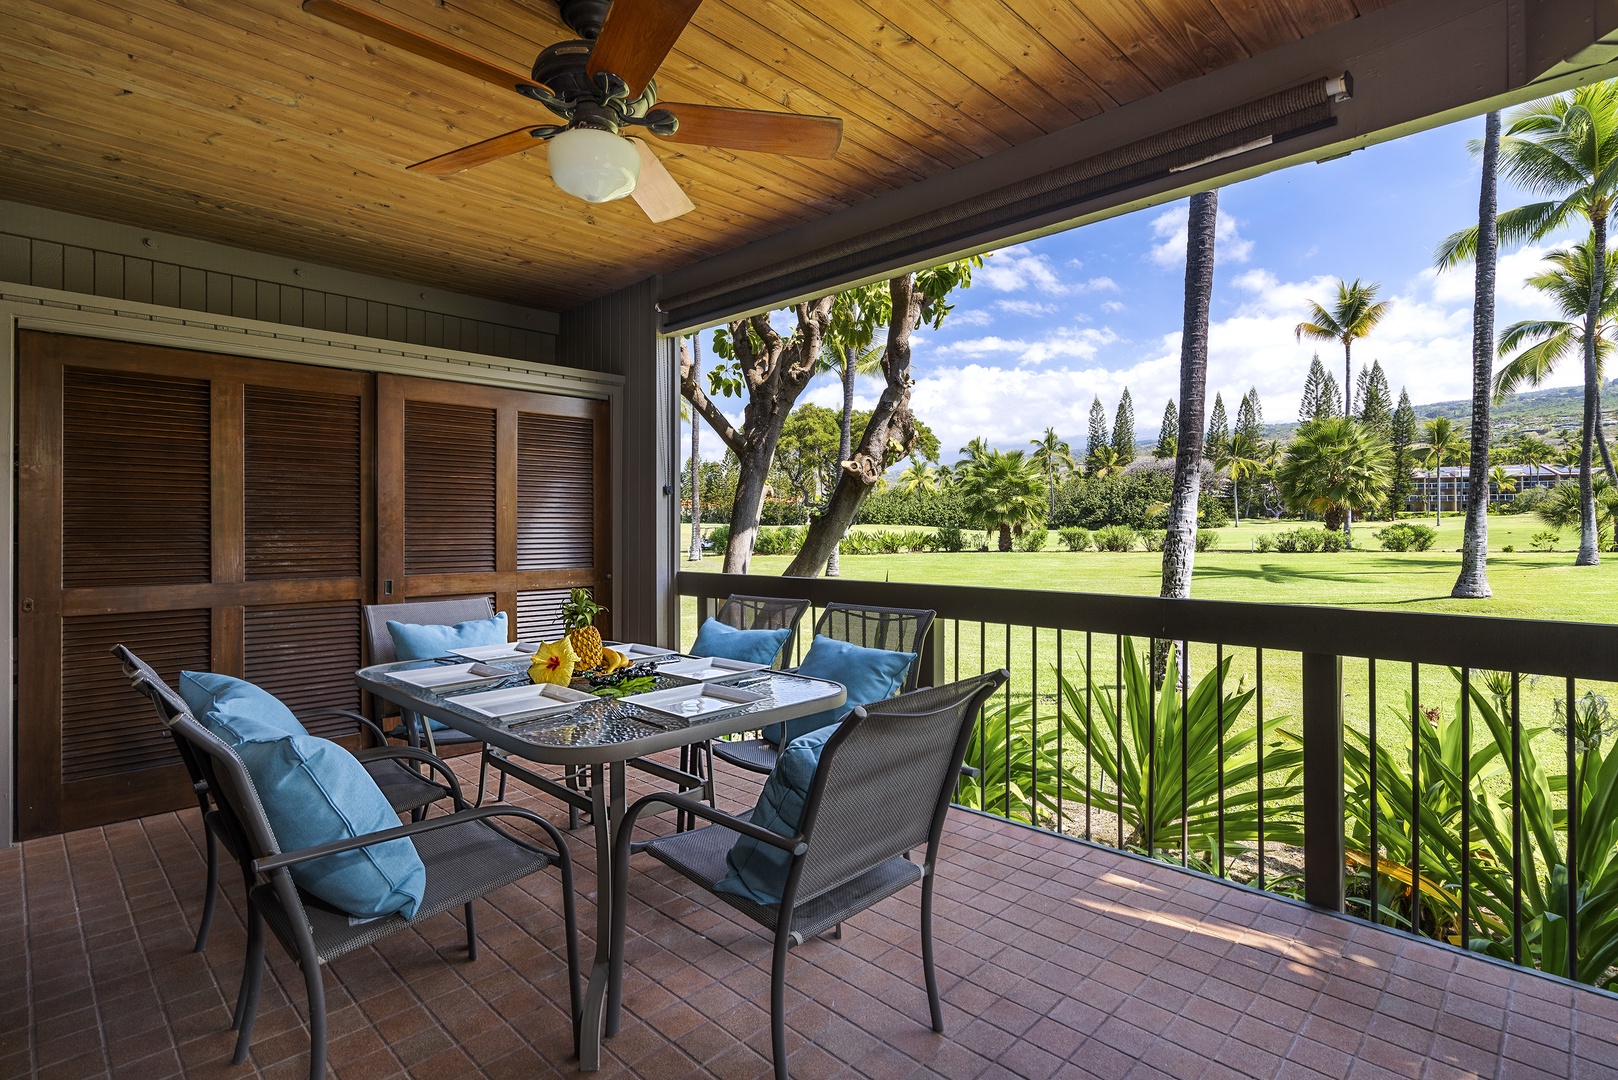 Kailua Kona Vacation Rentals, Kanaloa at Kona 1302 - Kanaloa 1302 is equipped with outdoor dining for 6